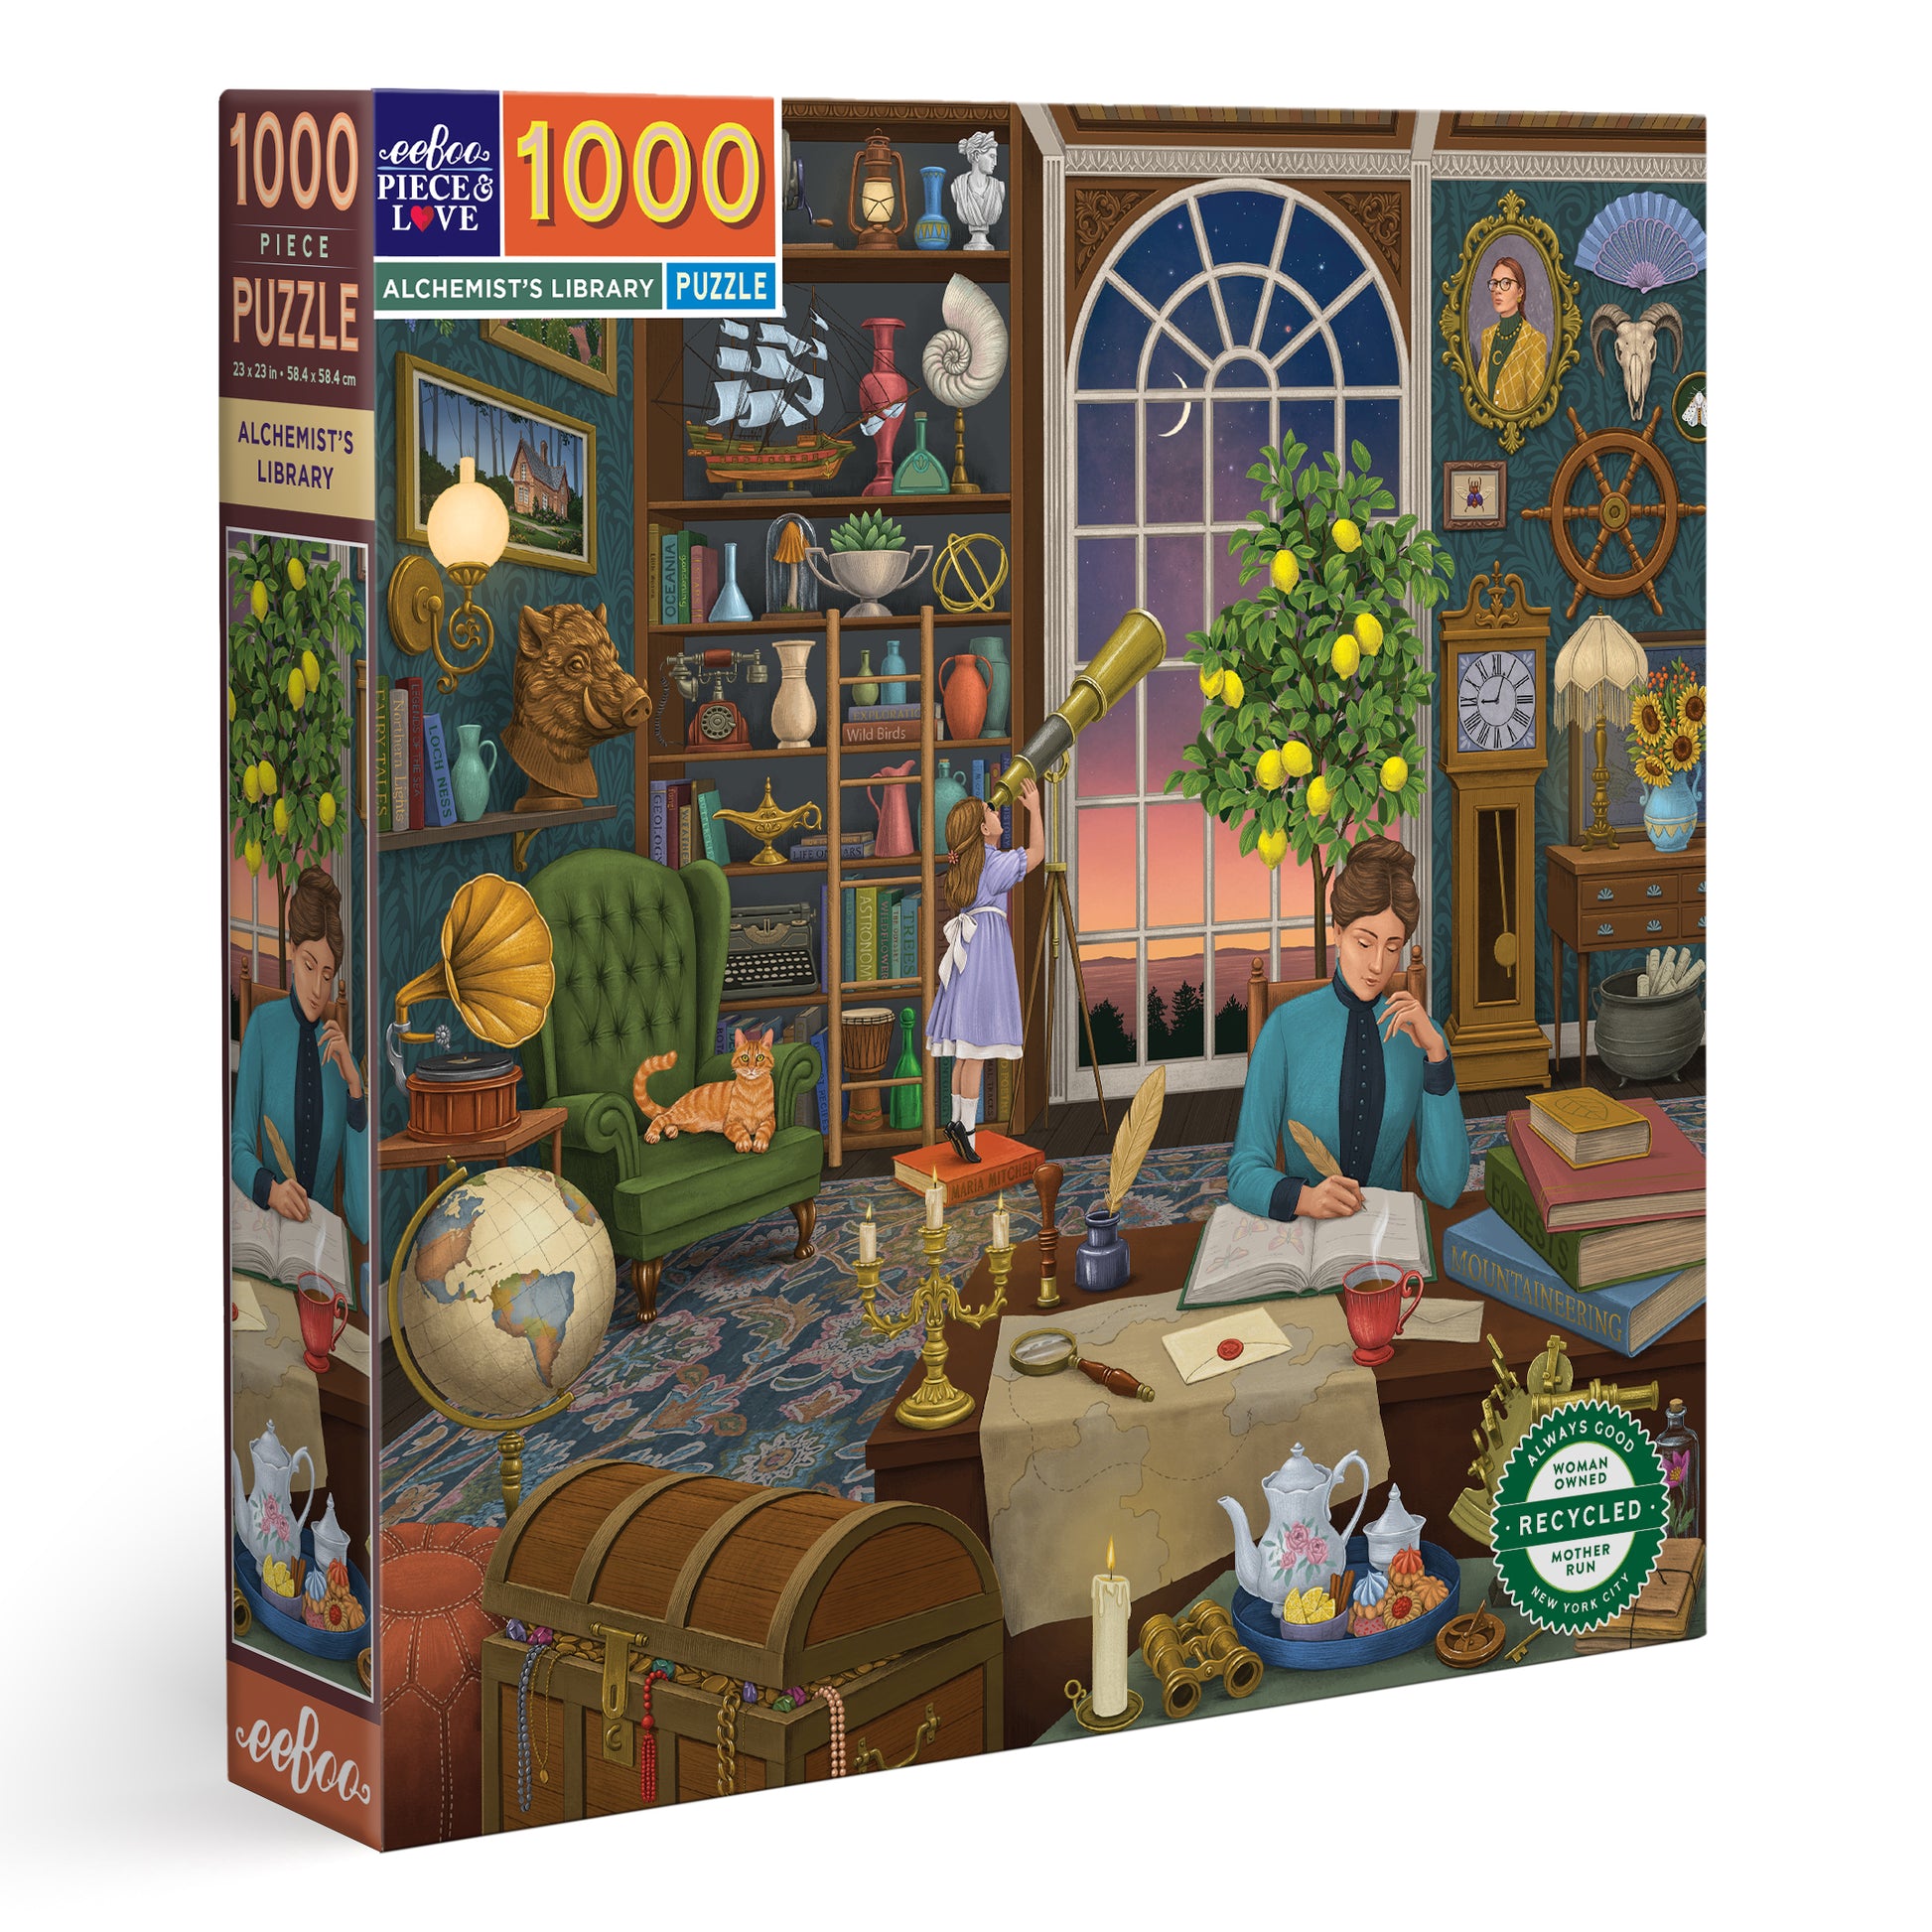 Alchemist's Library 1000 Piece Jigsaw Puzzle